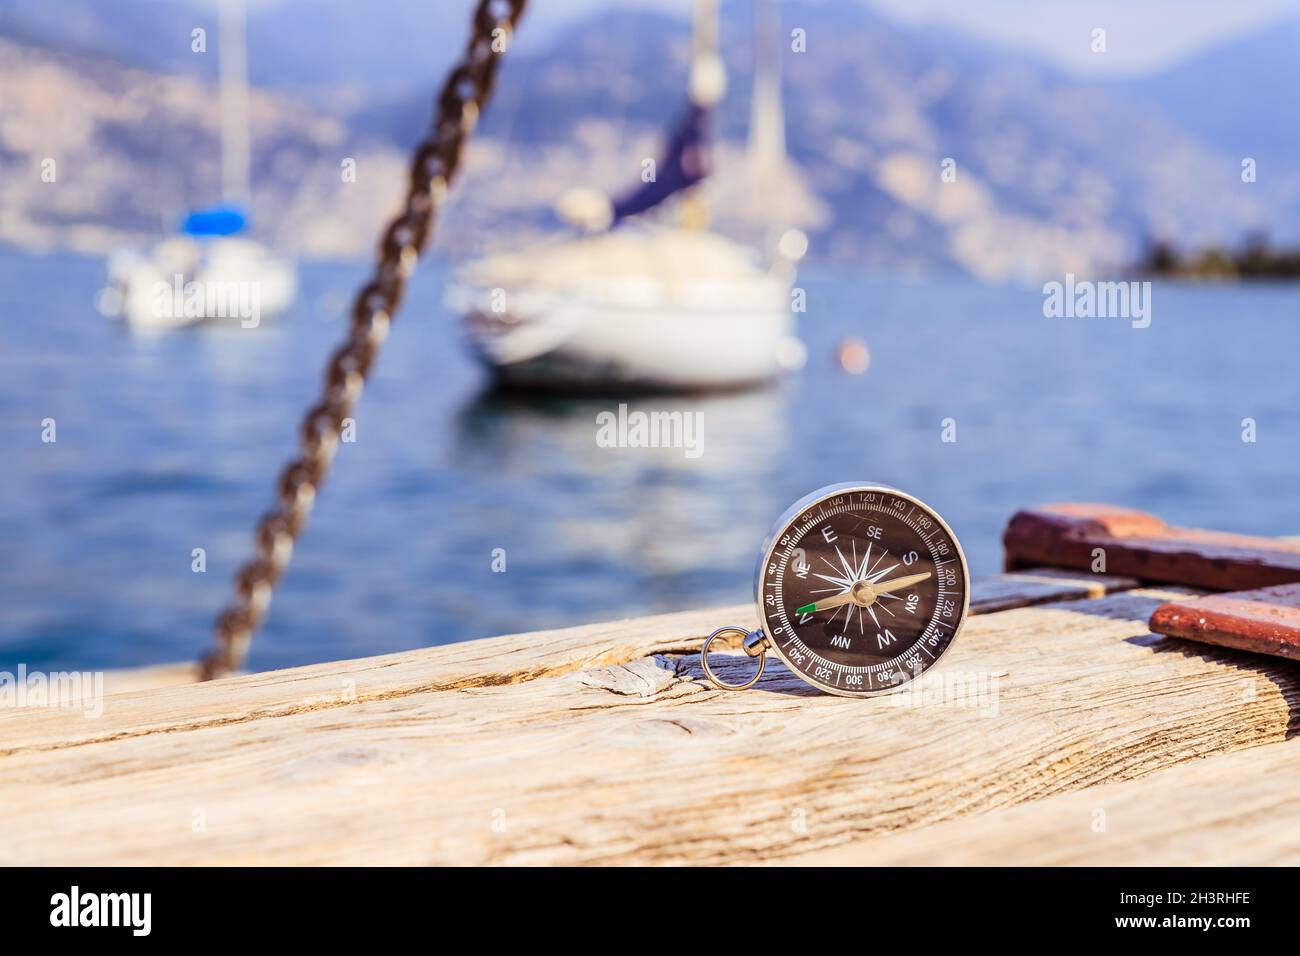 Segeln: Seekompass auf hölzernen Dock Pier. Segelboote im Hintergrund. Stockfoto